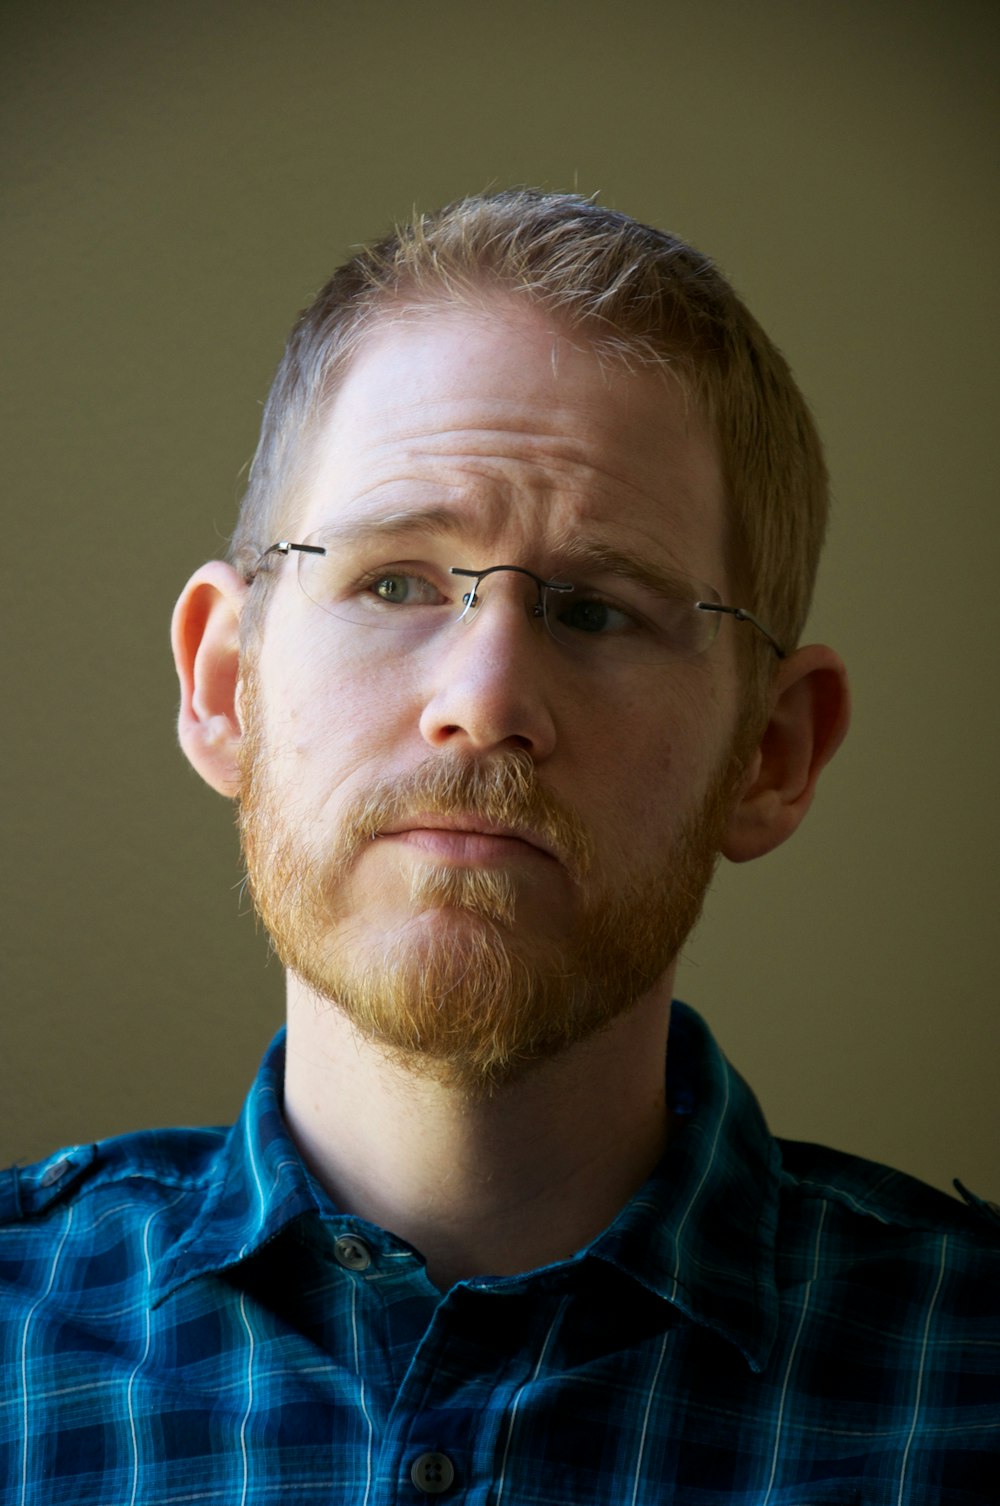 man in blue collared shirt wearing eyeglasses